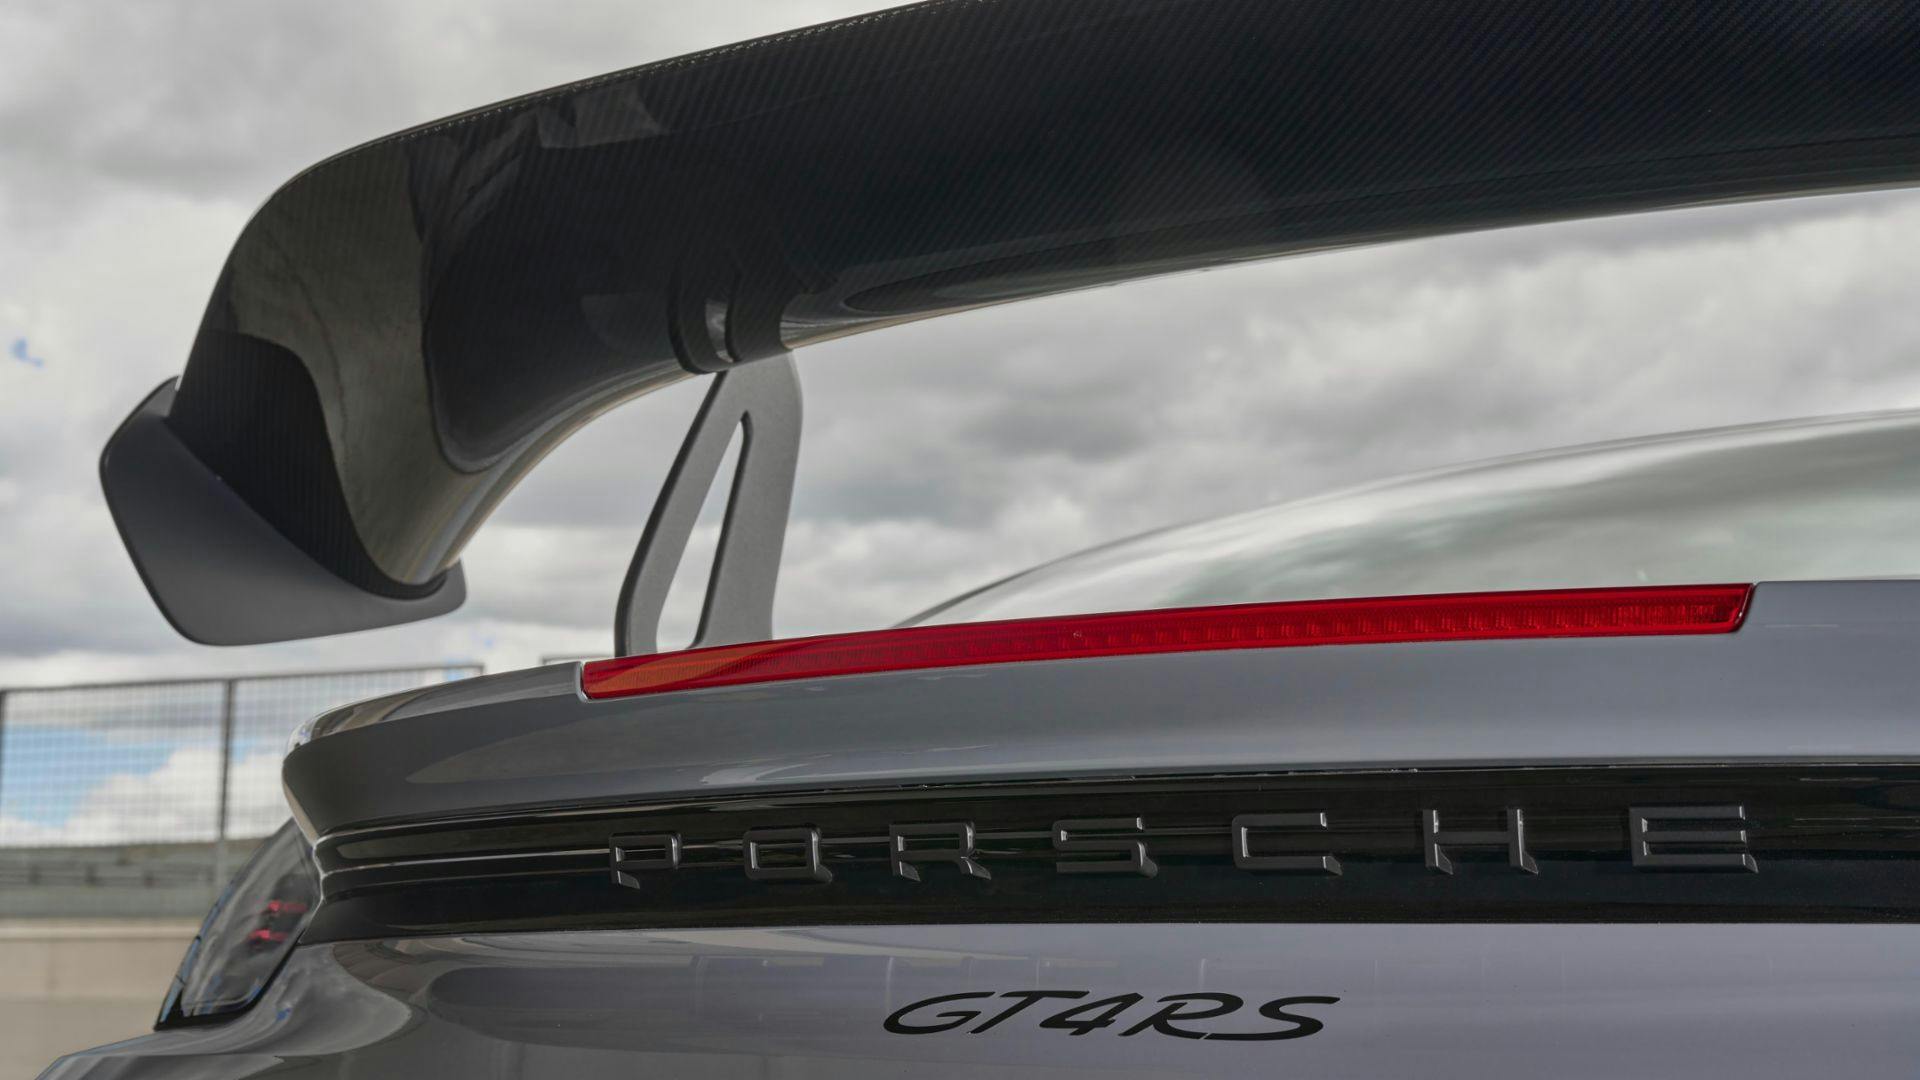 Porsche Cayman 718 GT4 RS rear wing